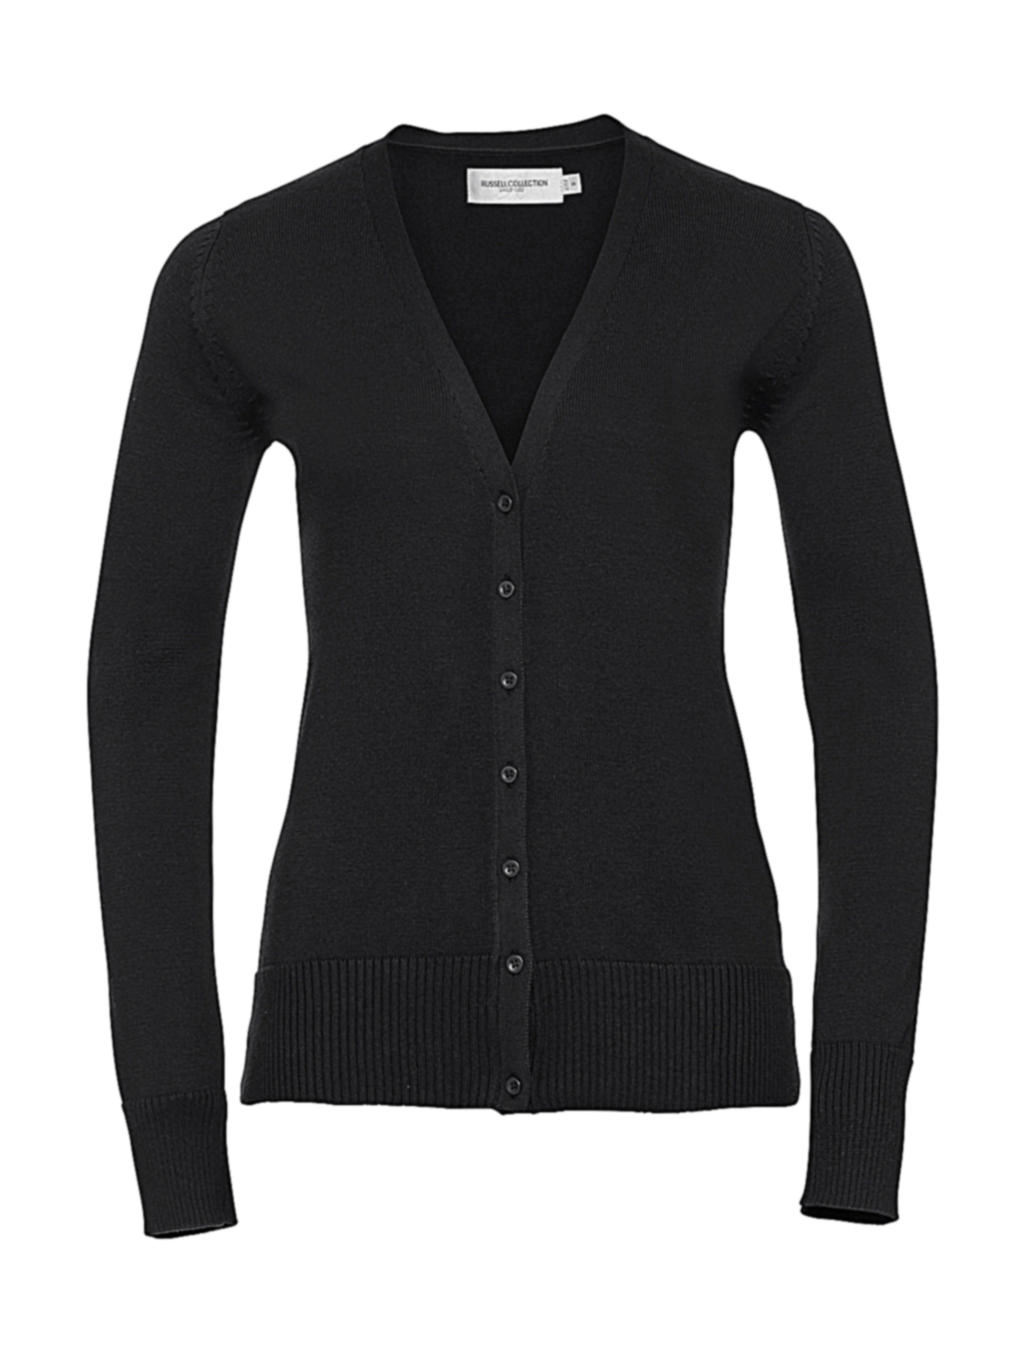 Ladies` V-Neck Knitted Cardigan zum Besticken und Bedrucken in der Farbe Black mit Ihren Logo, Schriftzug oder Motiv.